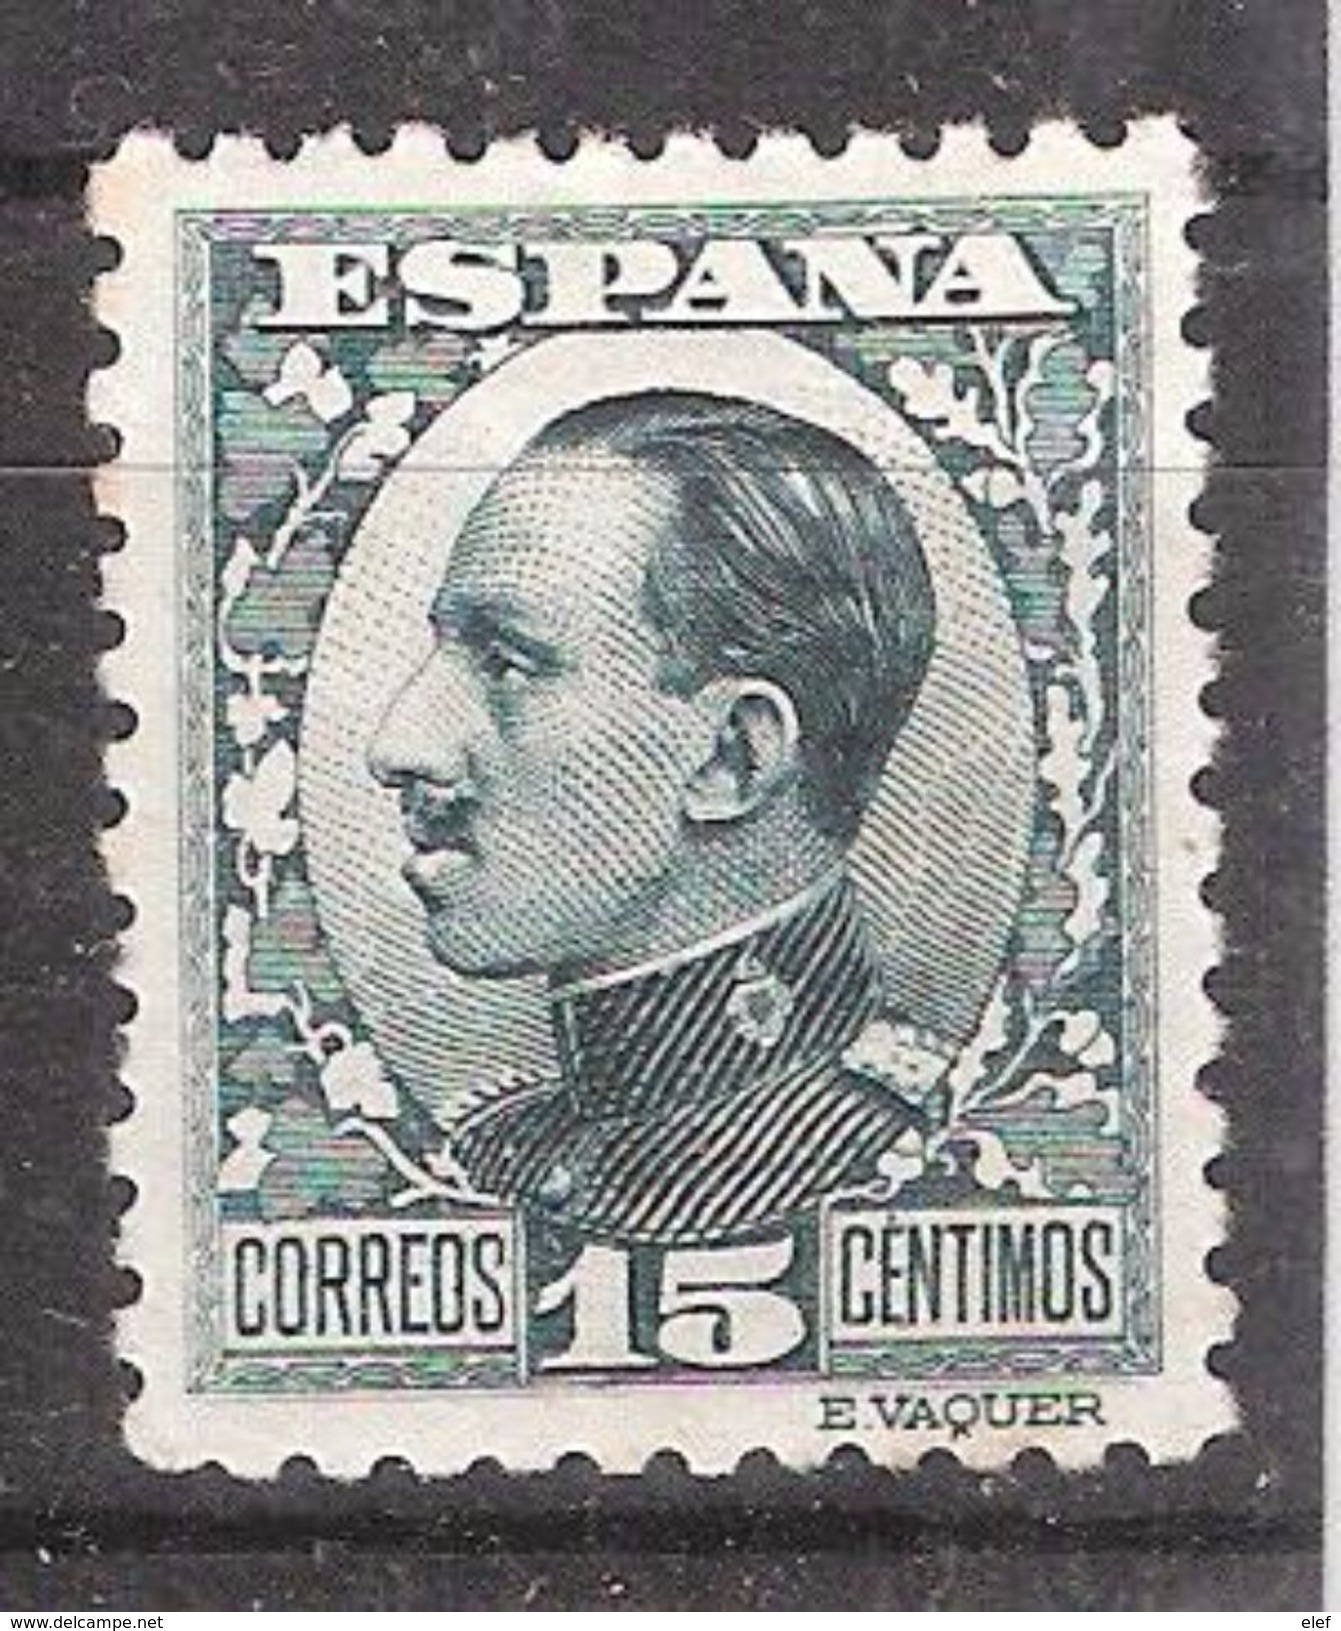 ESPAGNE / ESPANA / SPAIN / SPANIEN ,1930 Alfonso XIII ,  Yvert N° 406 , 15 C Vert Gris  ,neuf * / MH  ,TB - Unused Stamps